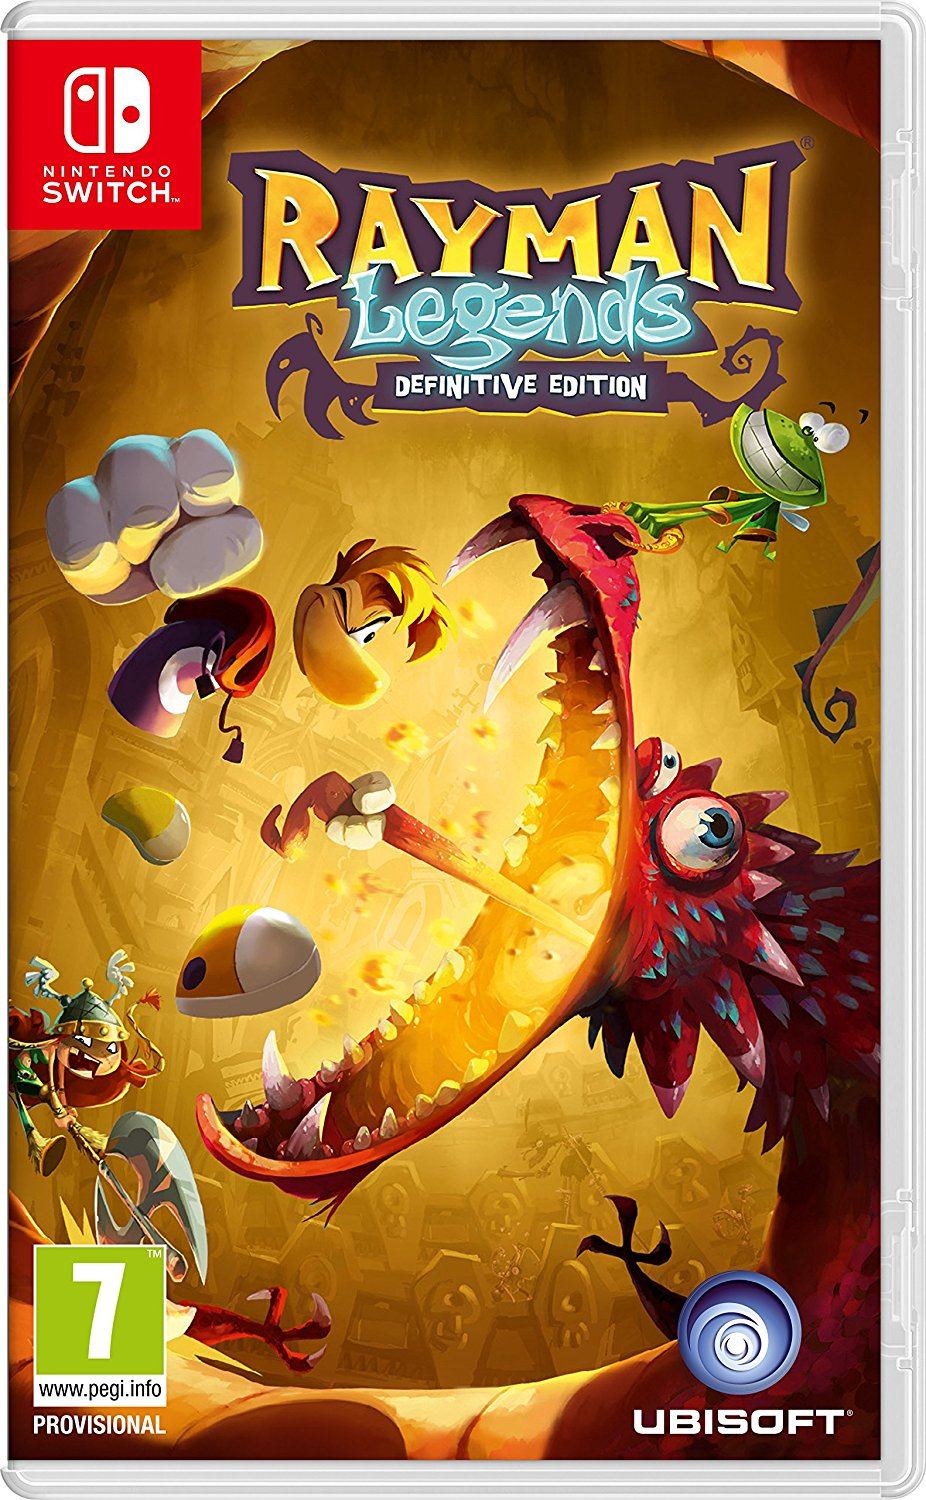 Rayman Adventures - Metacritic